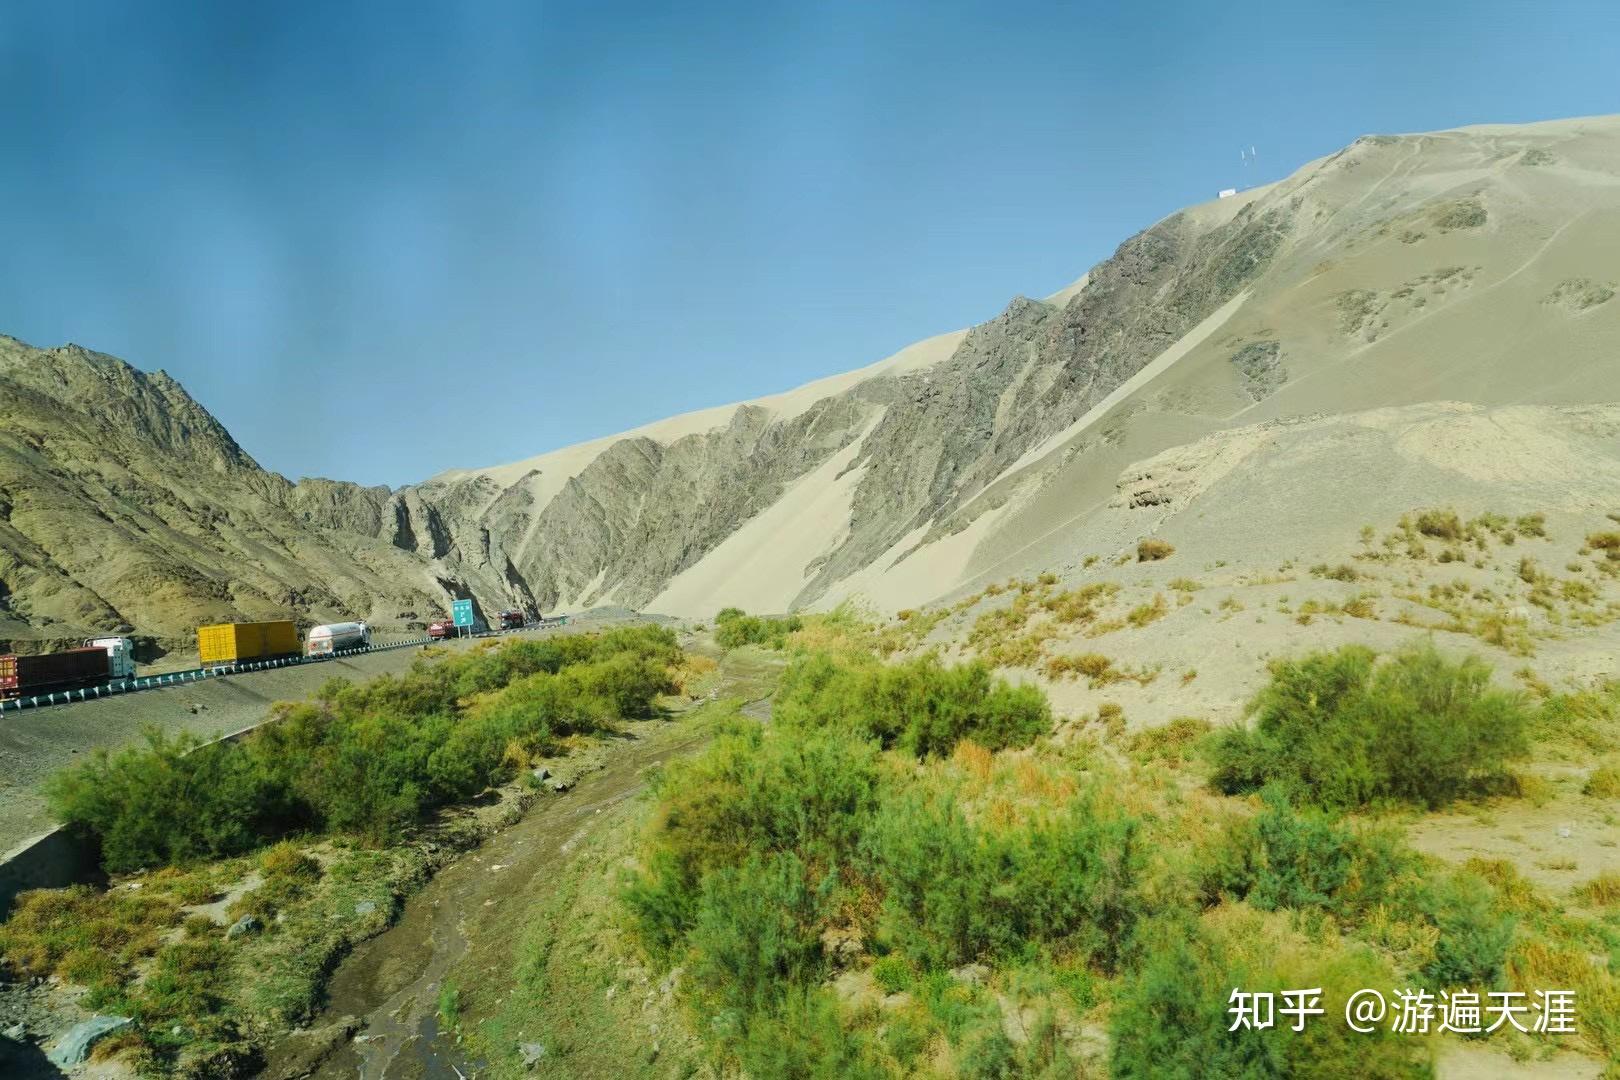 去了新疆必须要去看的景点有哪些，2019新疆旅游攻略 - 新疆游记攻略【携程攻略】